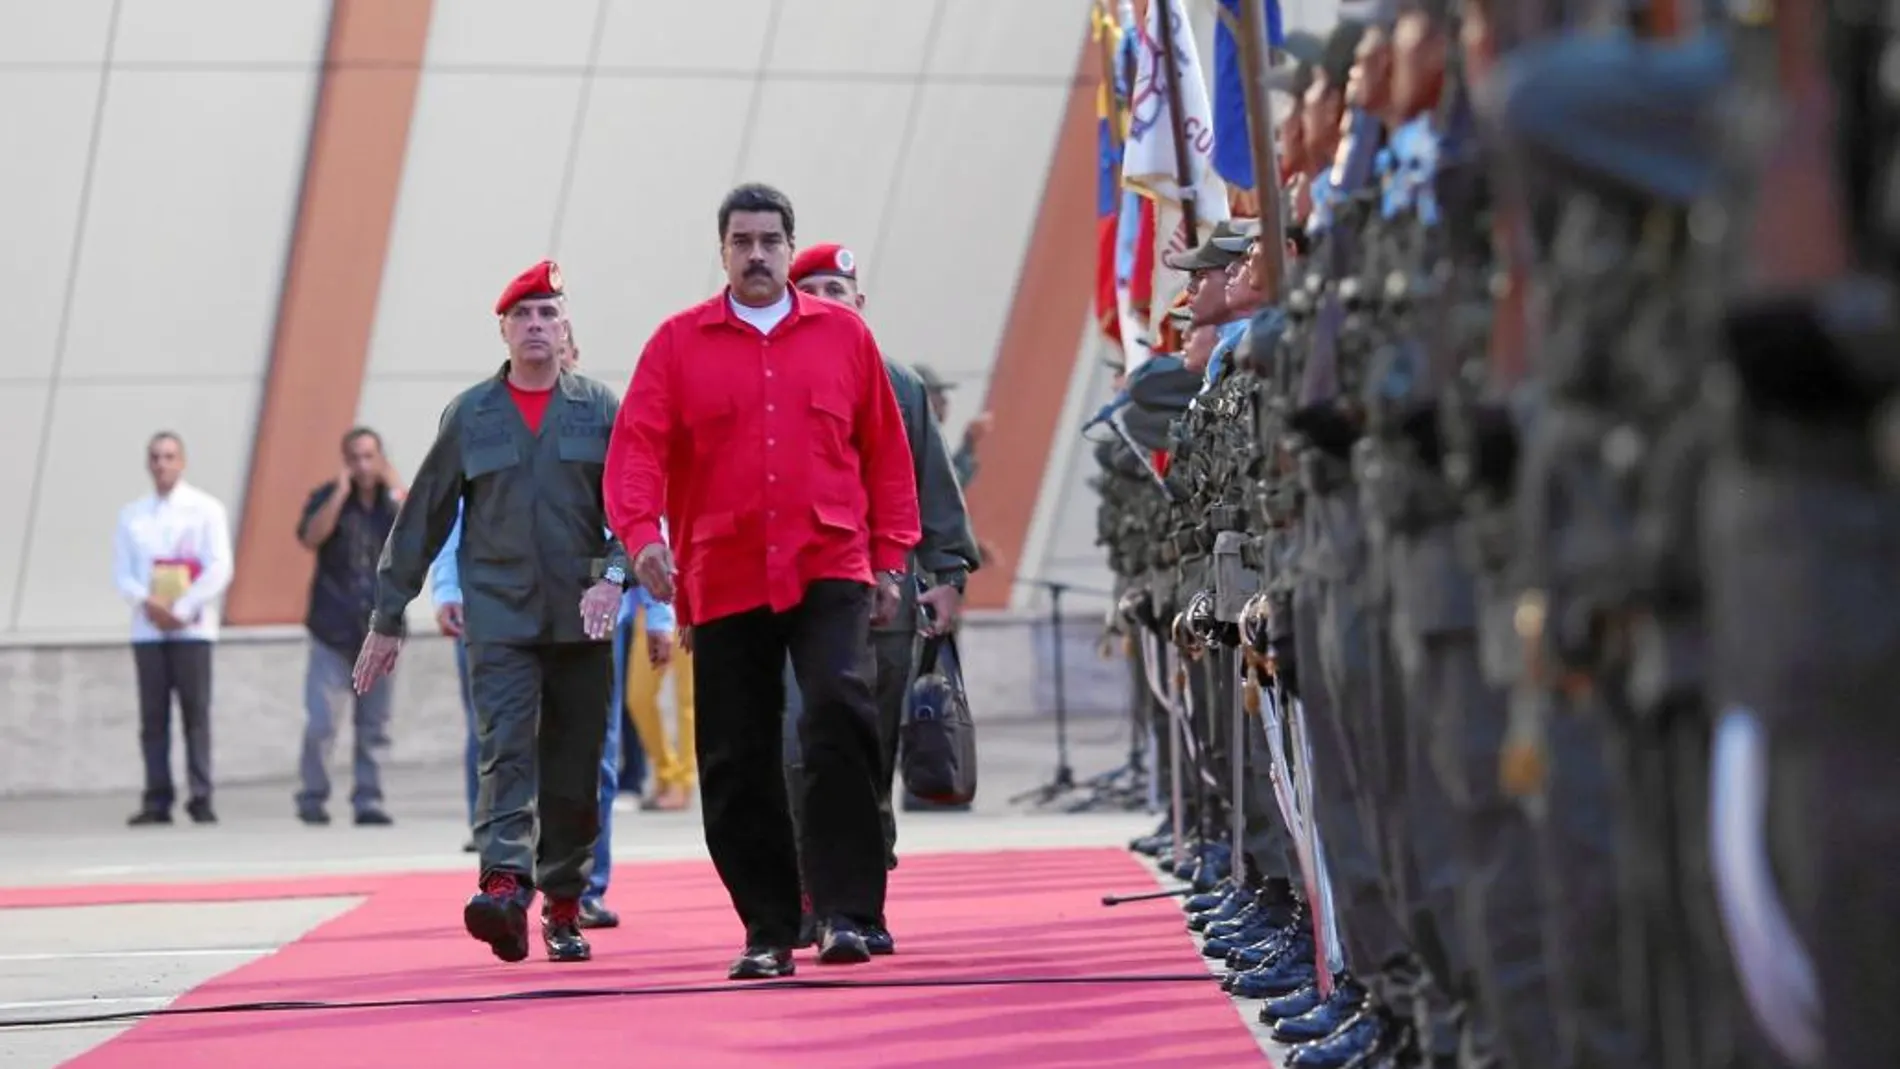 El presidente de Venezuela, Nicolás Maduro, fue recibido ayer con honores militares en el aeropuerto de Maiquetia, en Caracas